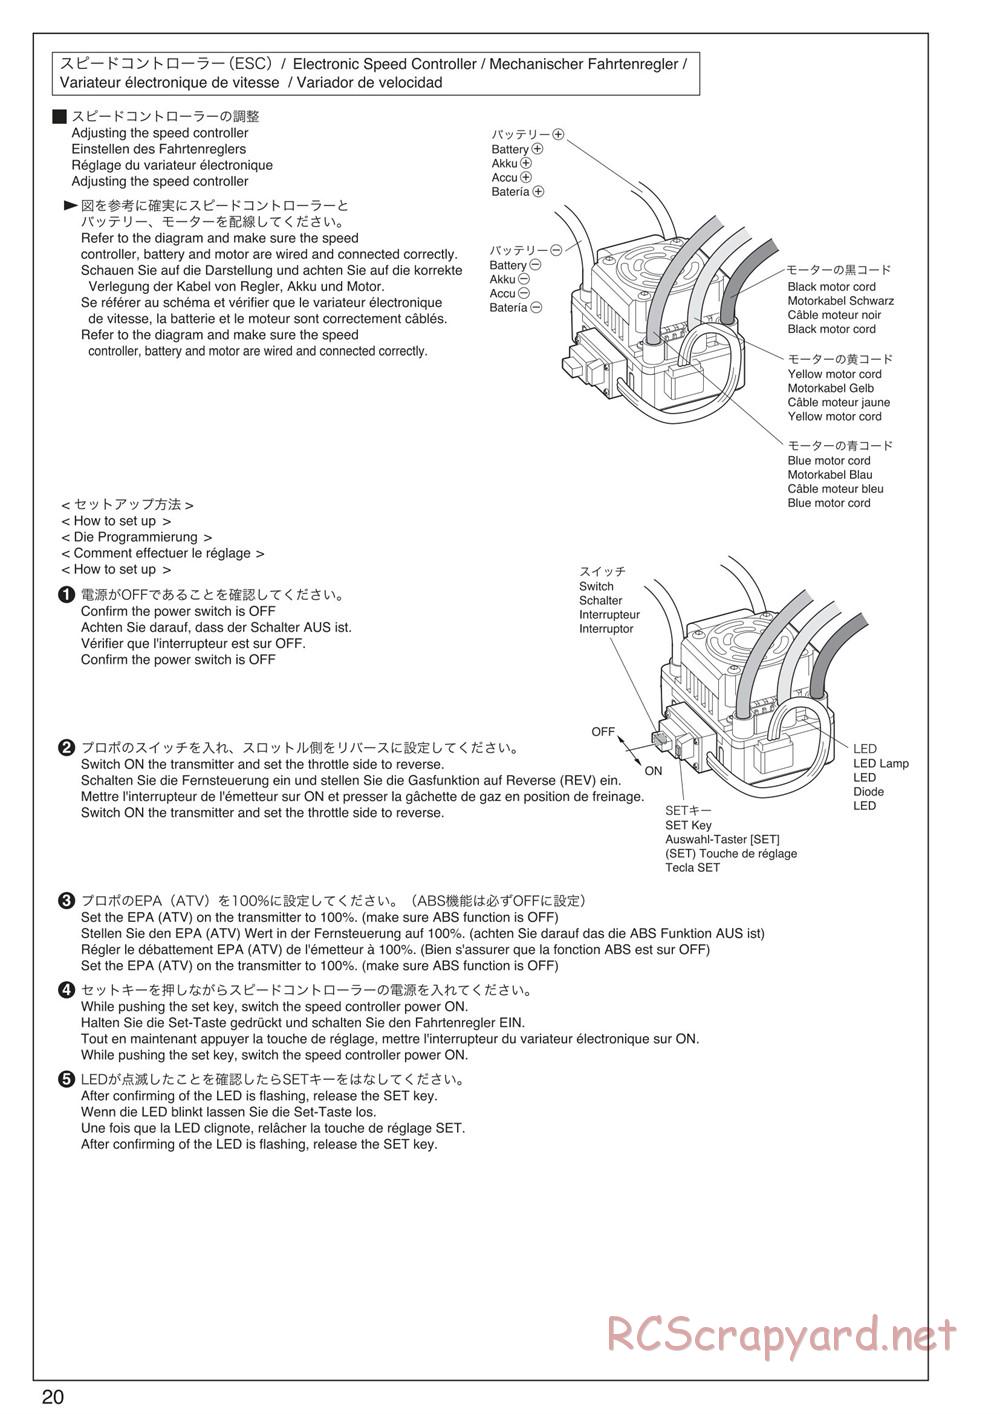 Kyosho - Scorpion XXL VE - Manual - Page 20